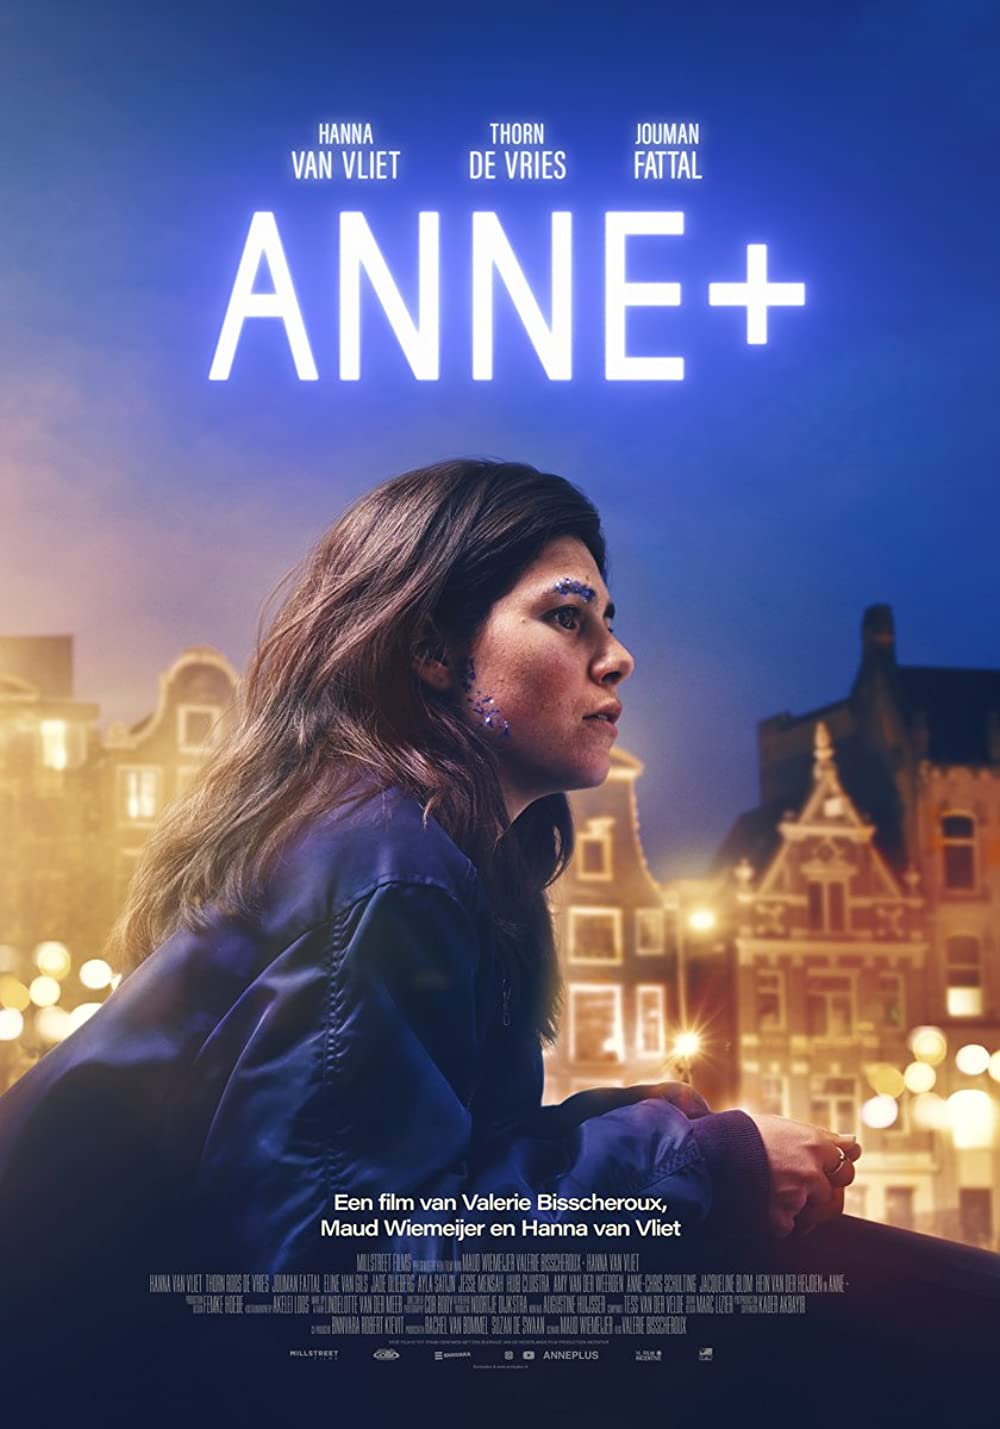 Anne+ Anne Plus Dutch lesbian movie Netflix 2022